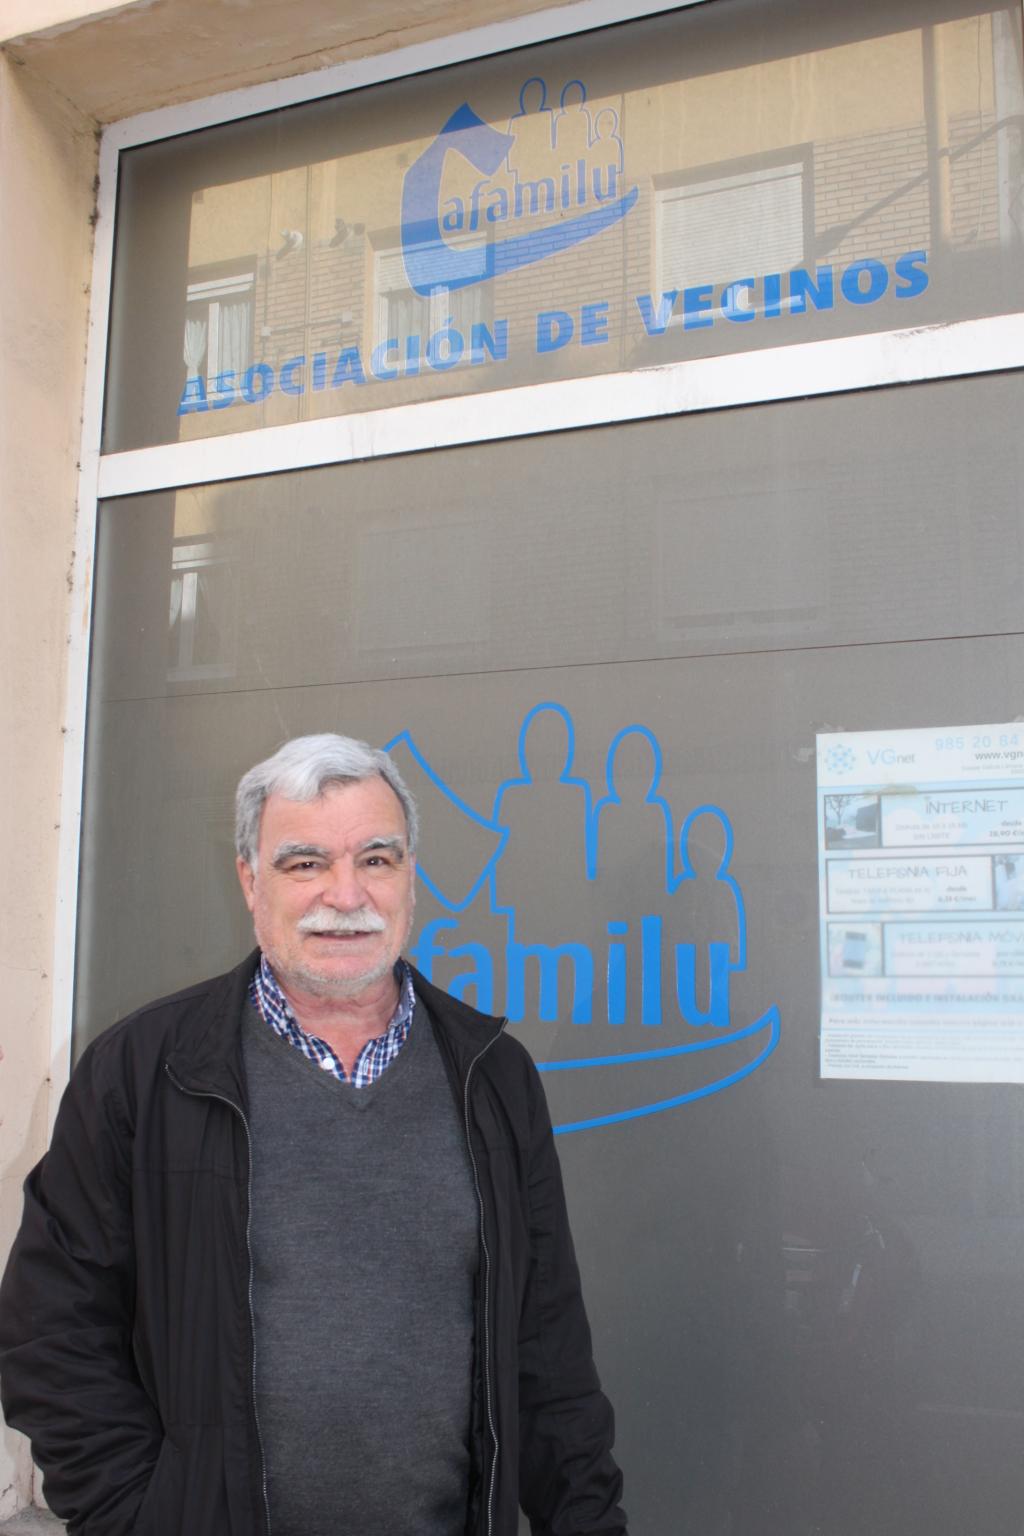 El Tapin - Cafamilu, 50 años al servicio de los vecinos de Lugo